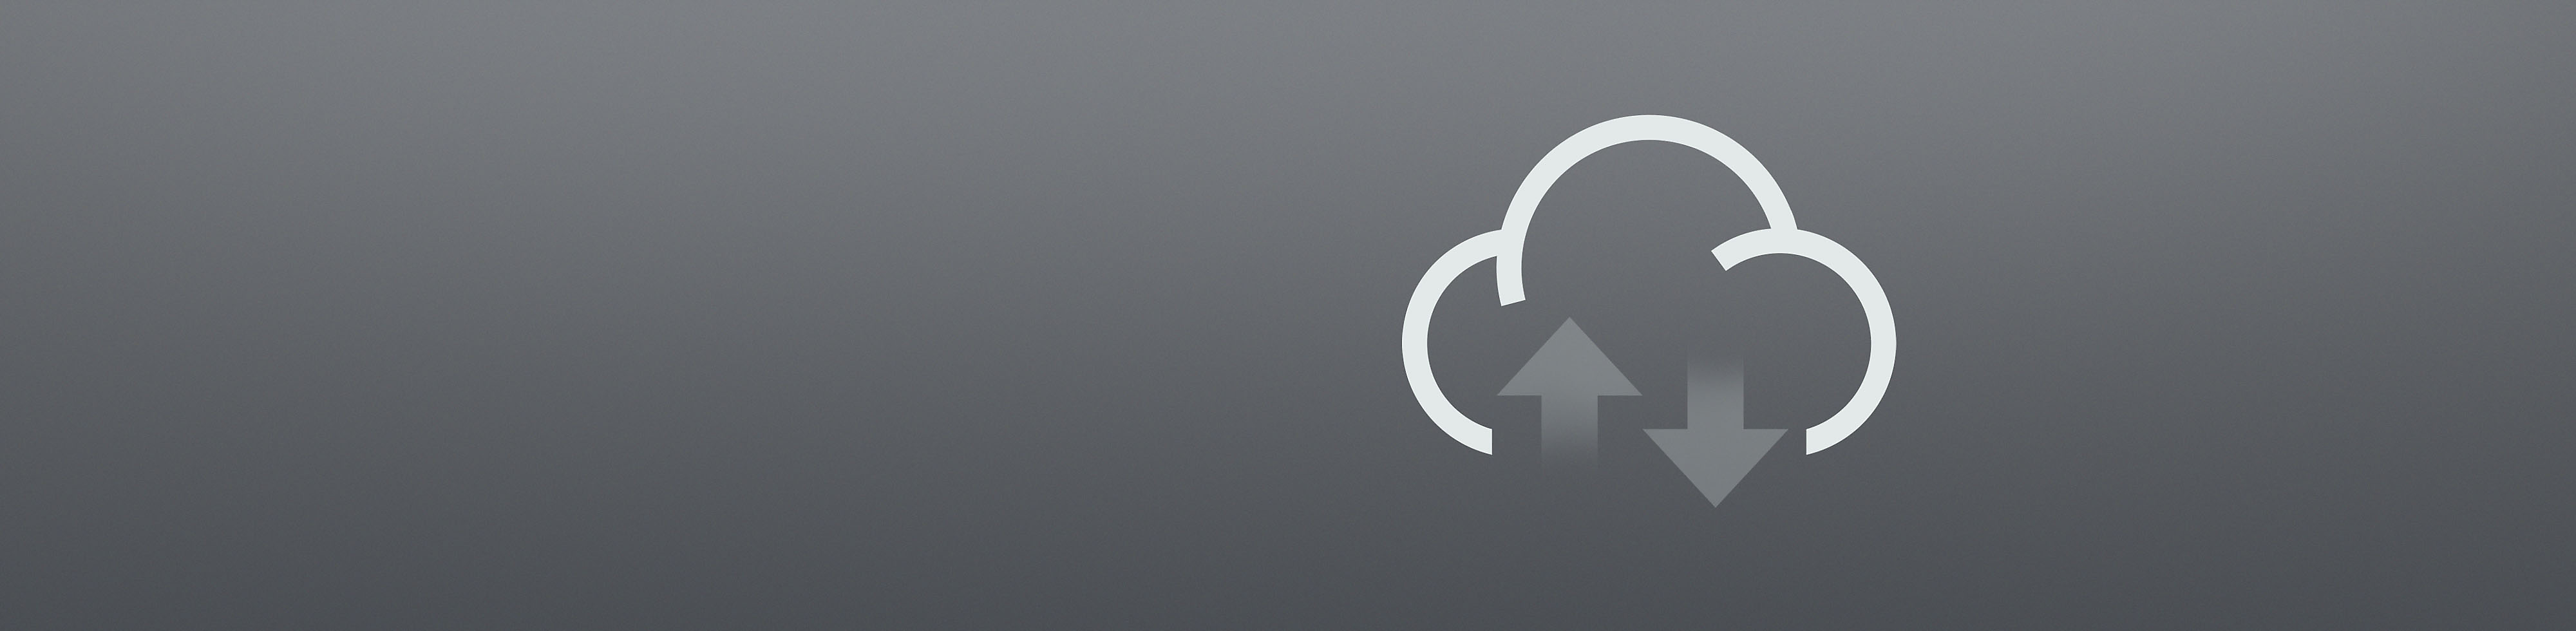 Icône grise de chargement/téléchargement depuis le Cloud